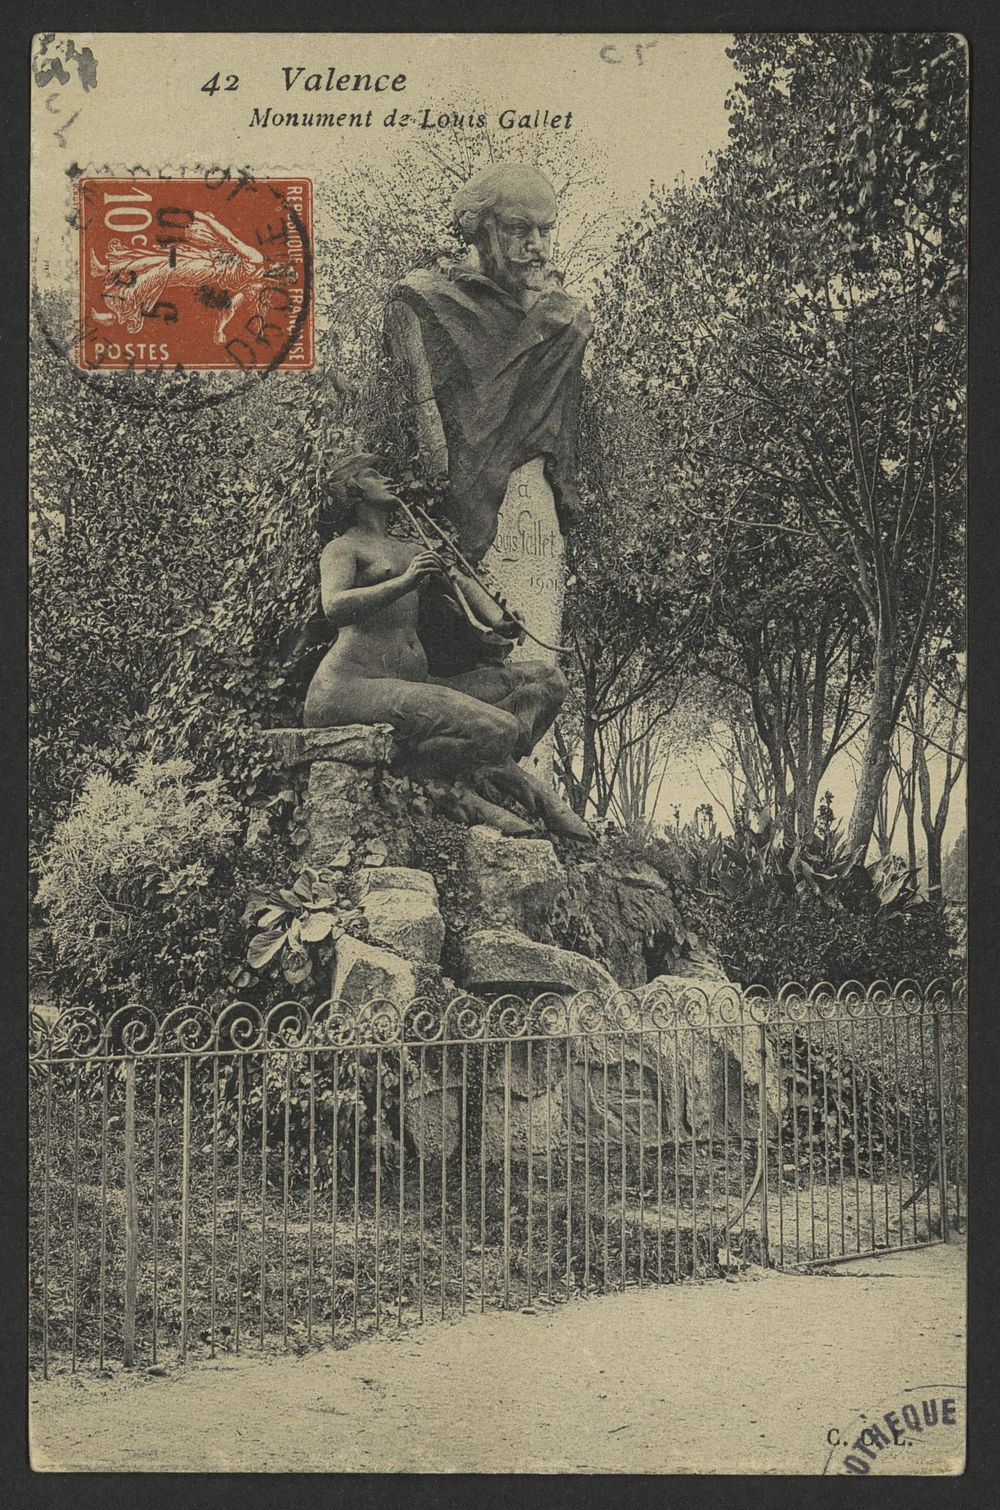 Valence - Monument de Louis Gallet